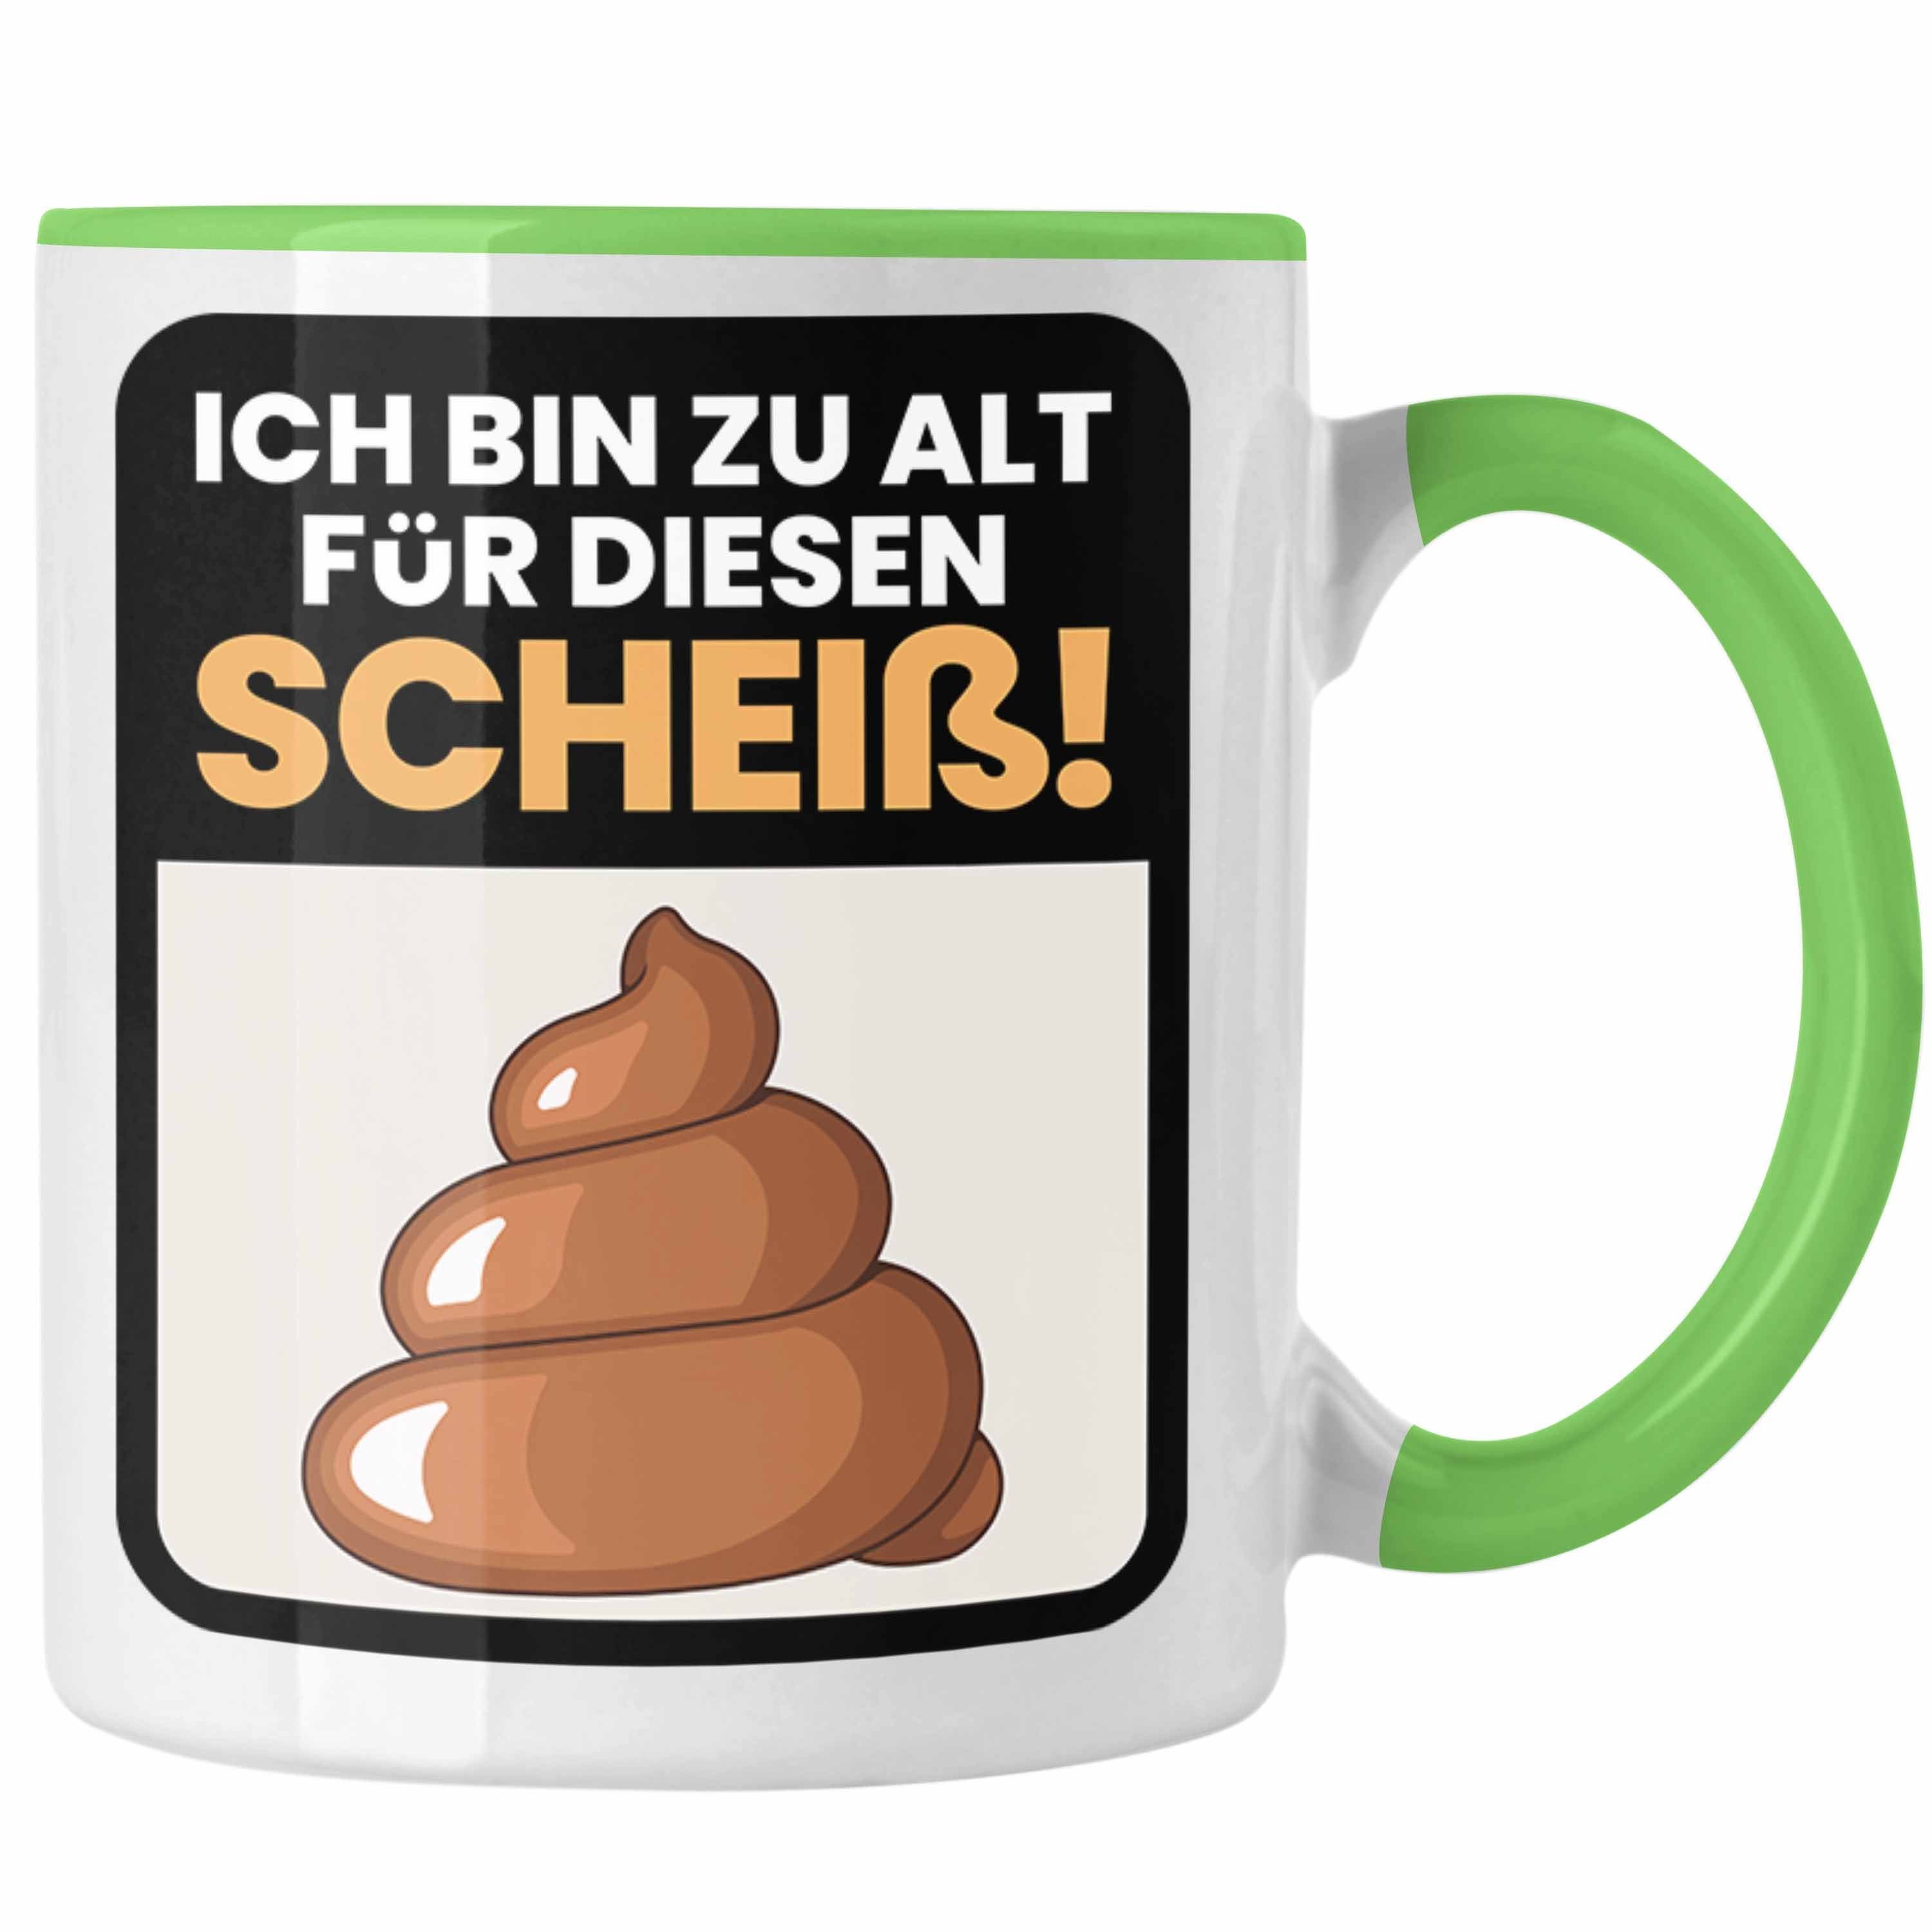 Trendation Tasse Lustiger Spruch Kaffee-Becher Tasse Ich Bin Zu Als Für Diesen Sch**** Grün